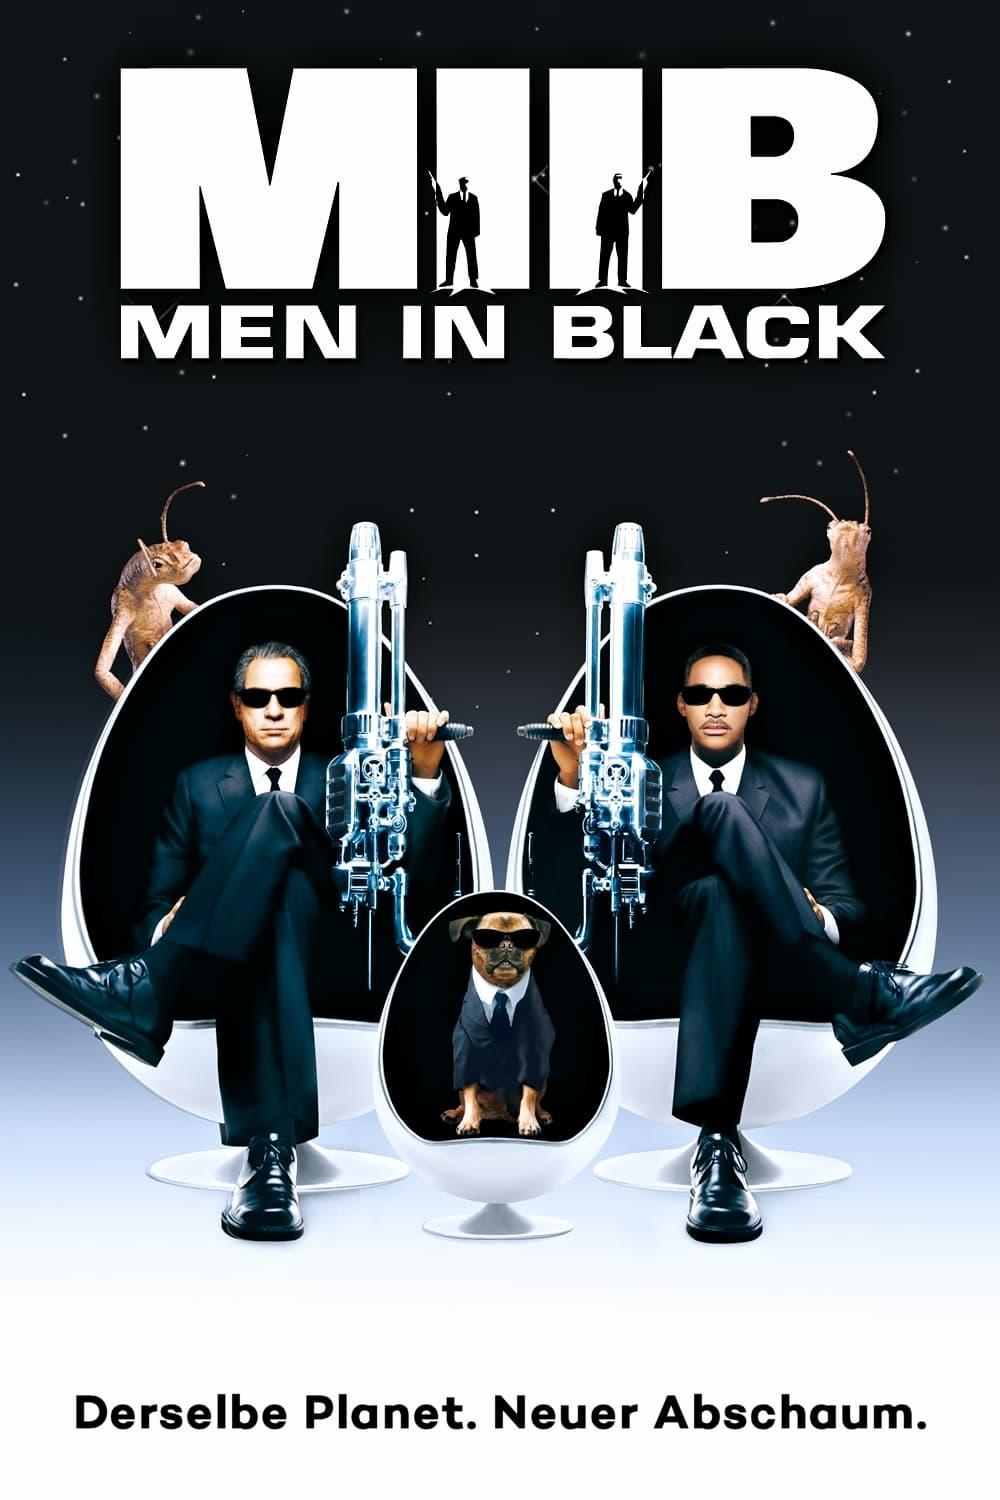 Men in Black II poster